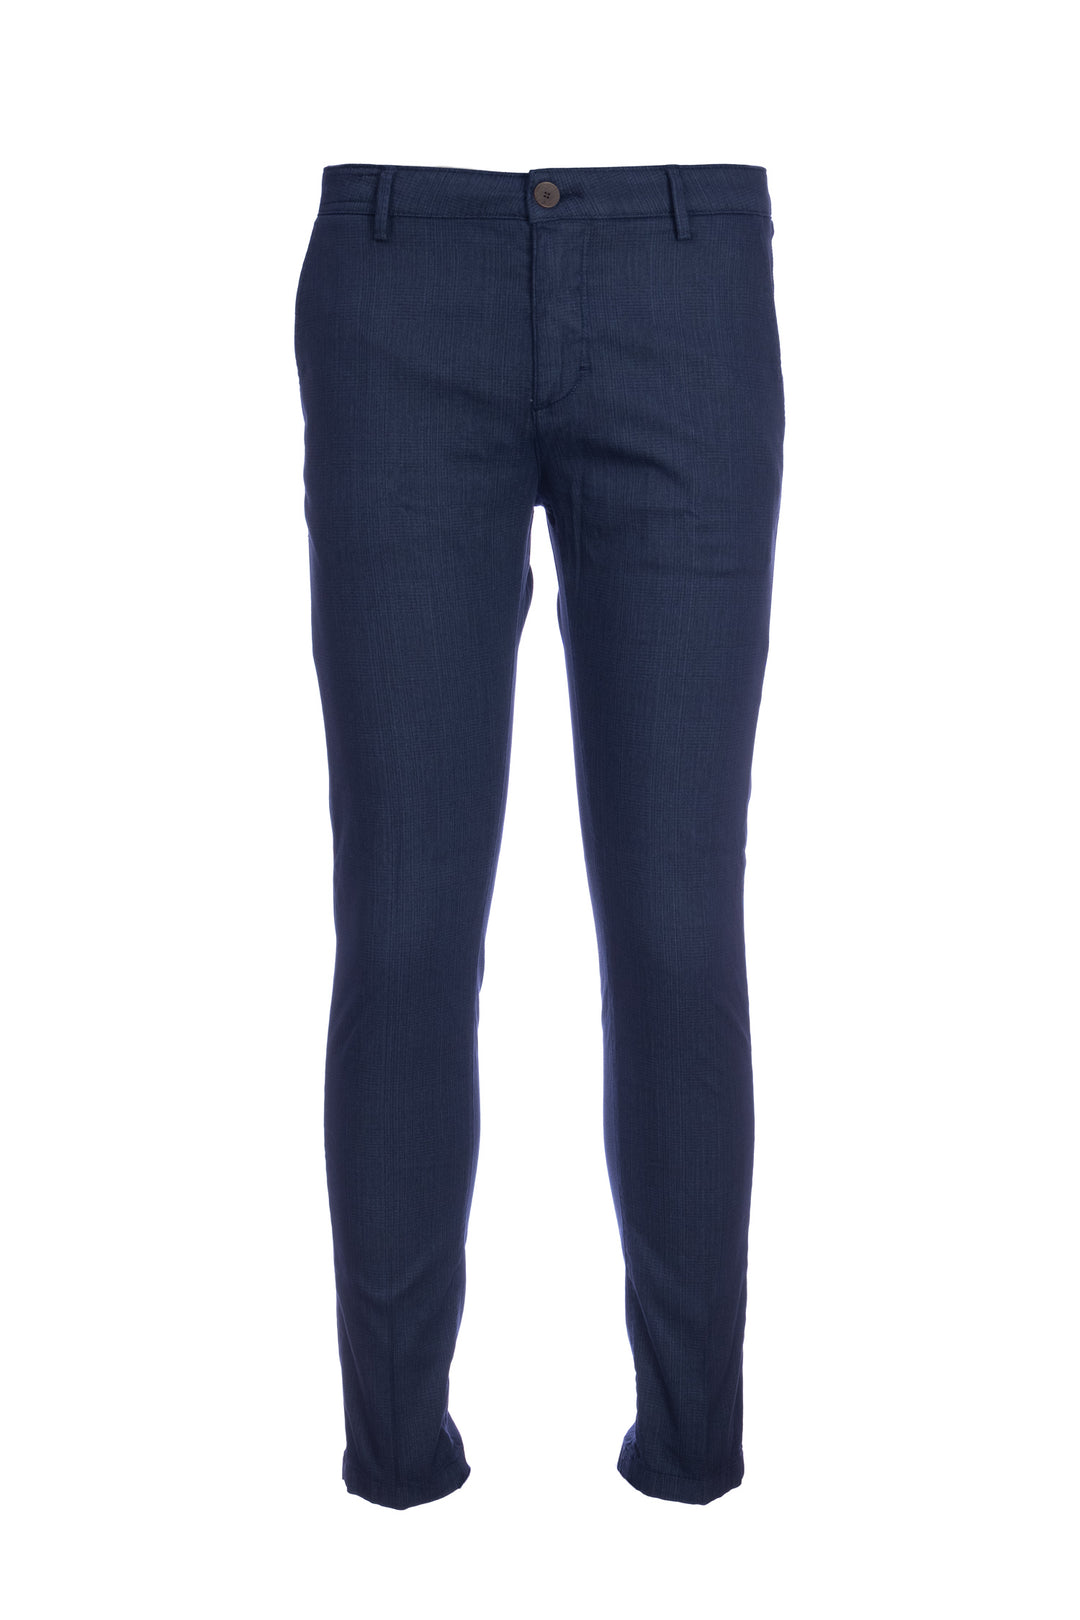 YAN SIMMON Pantalone blu navy check in gabardina di cotone elasticizzato - Mancinelli 1954